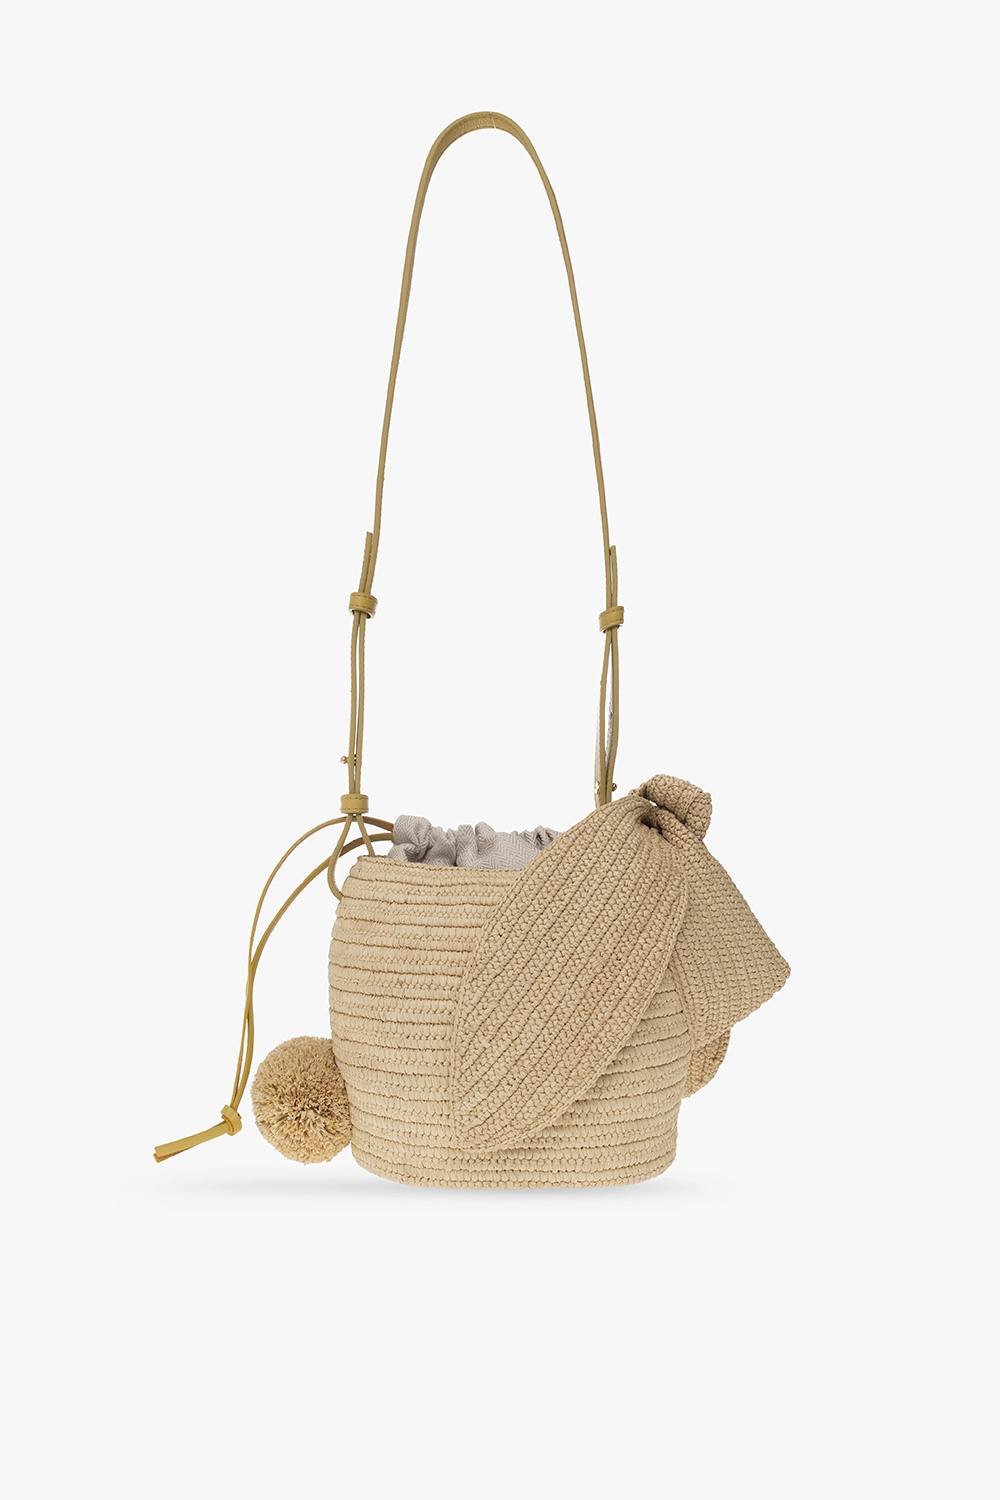 Loewe ‘Bunny’ bucket shoulder bag